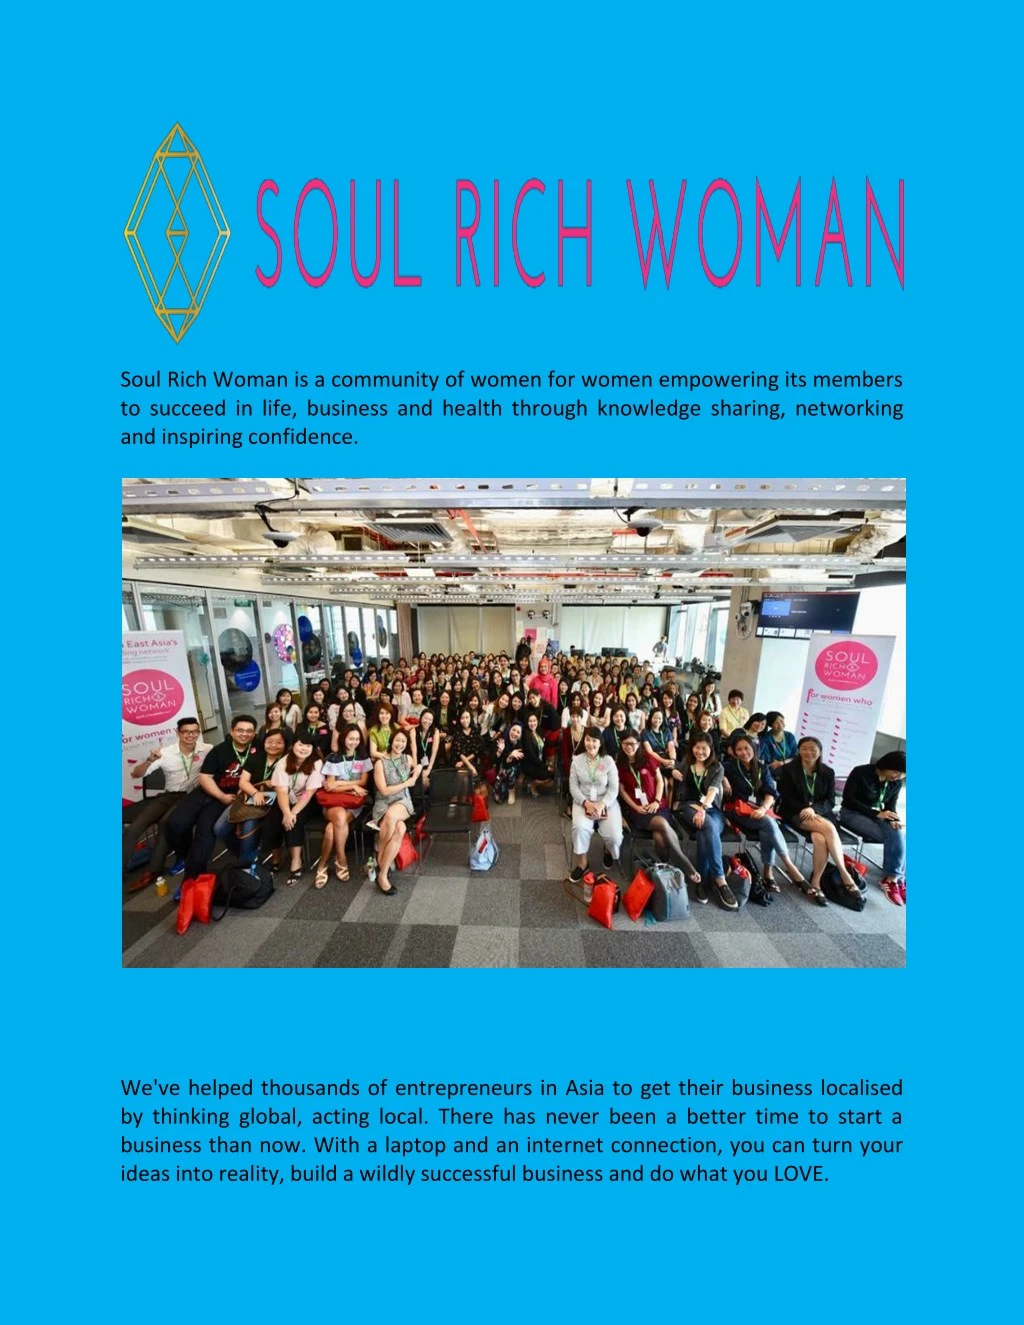 soul rich woman is a community of women for women